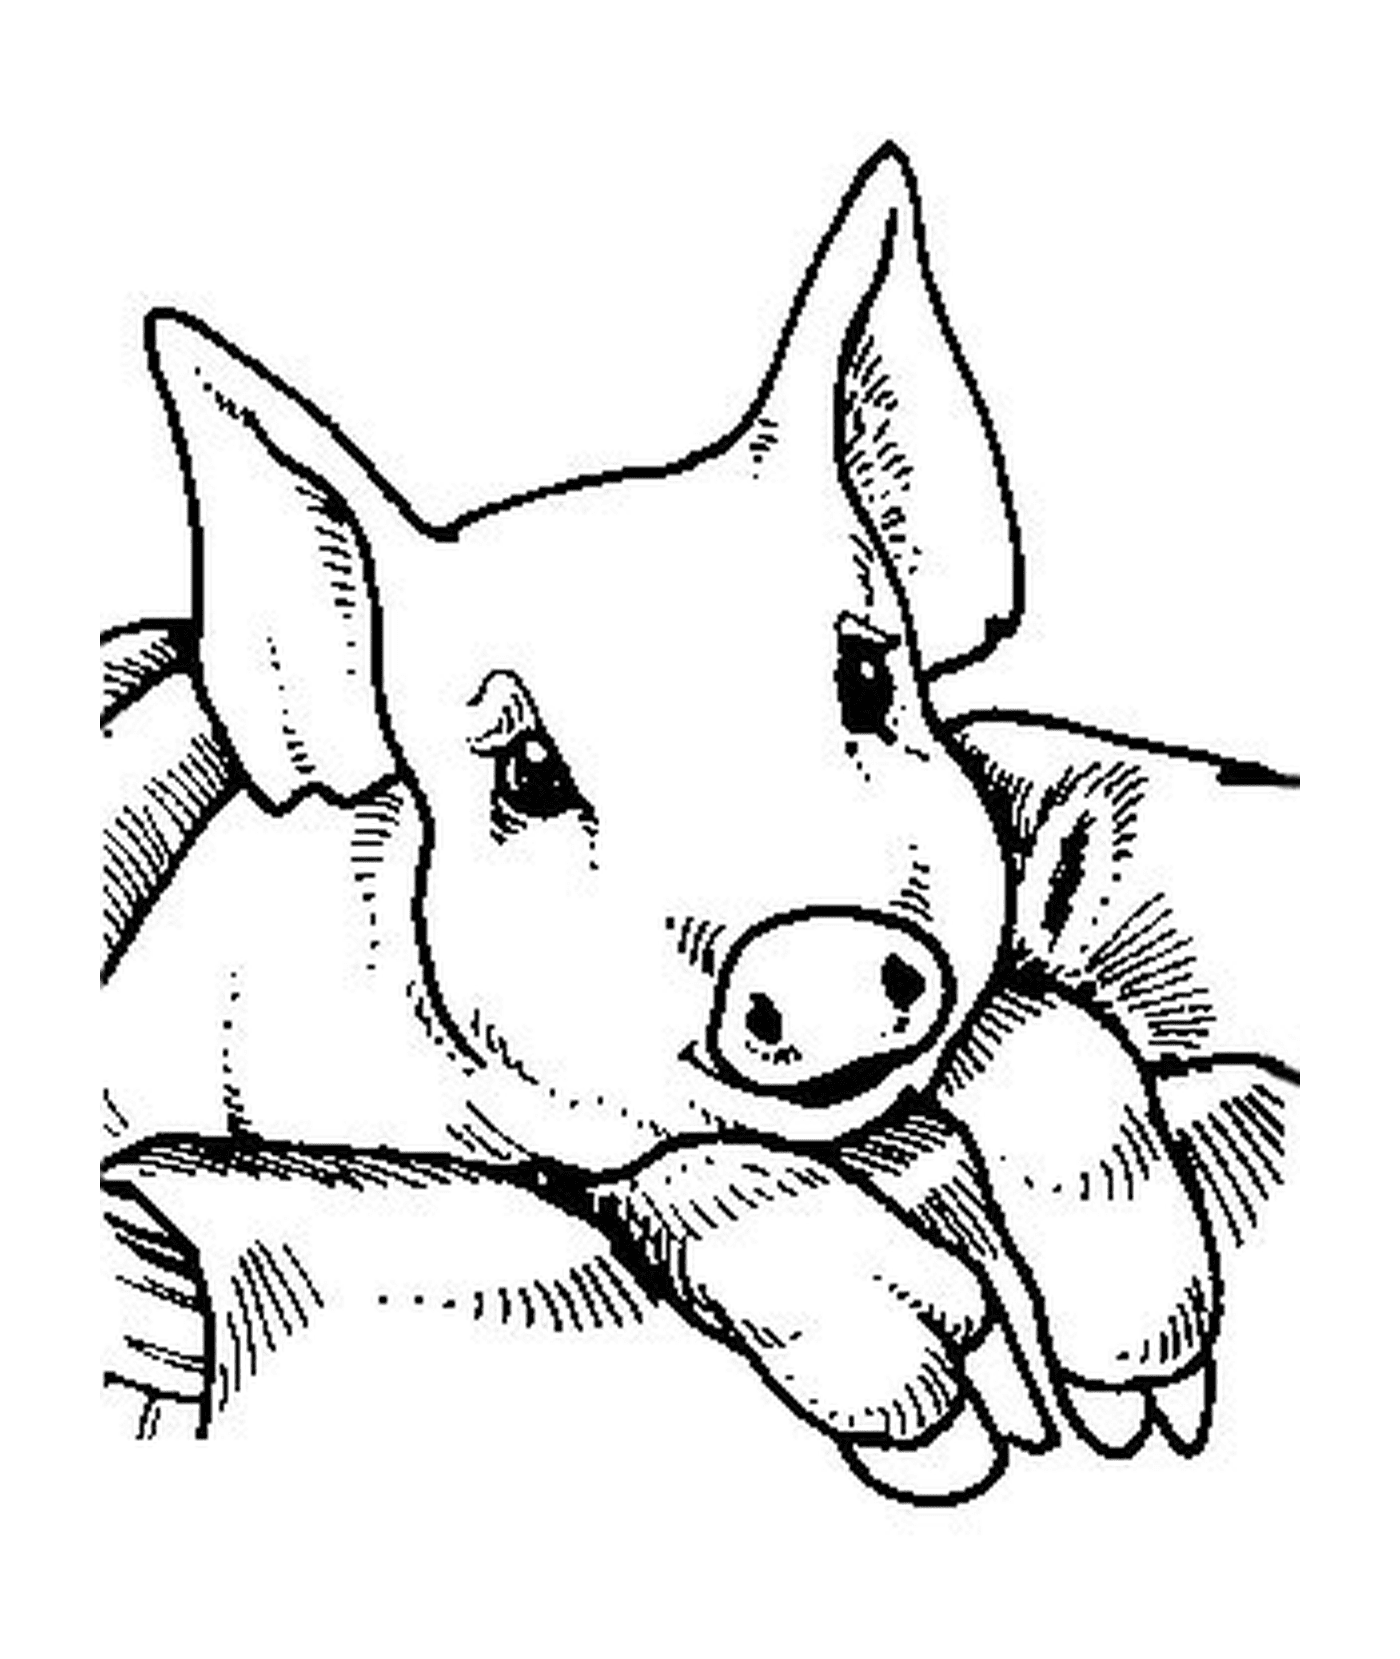  Un bambino di maiale seduto su una coperta 